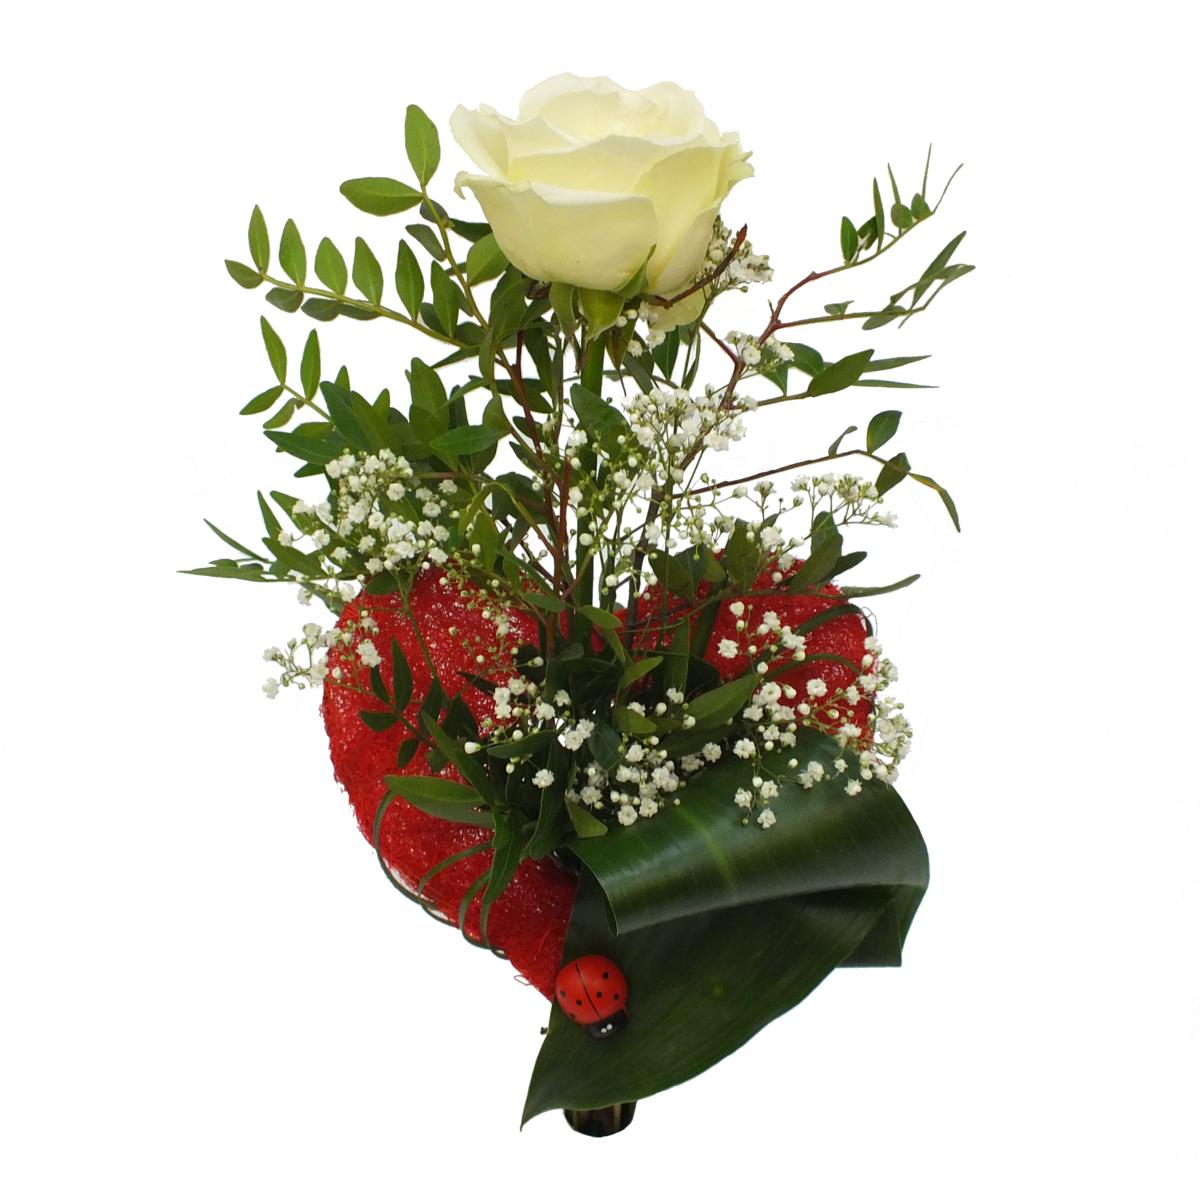 Langstielige weiße Rose (ca. 50 cm) in rotem Herz